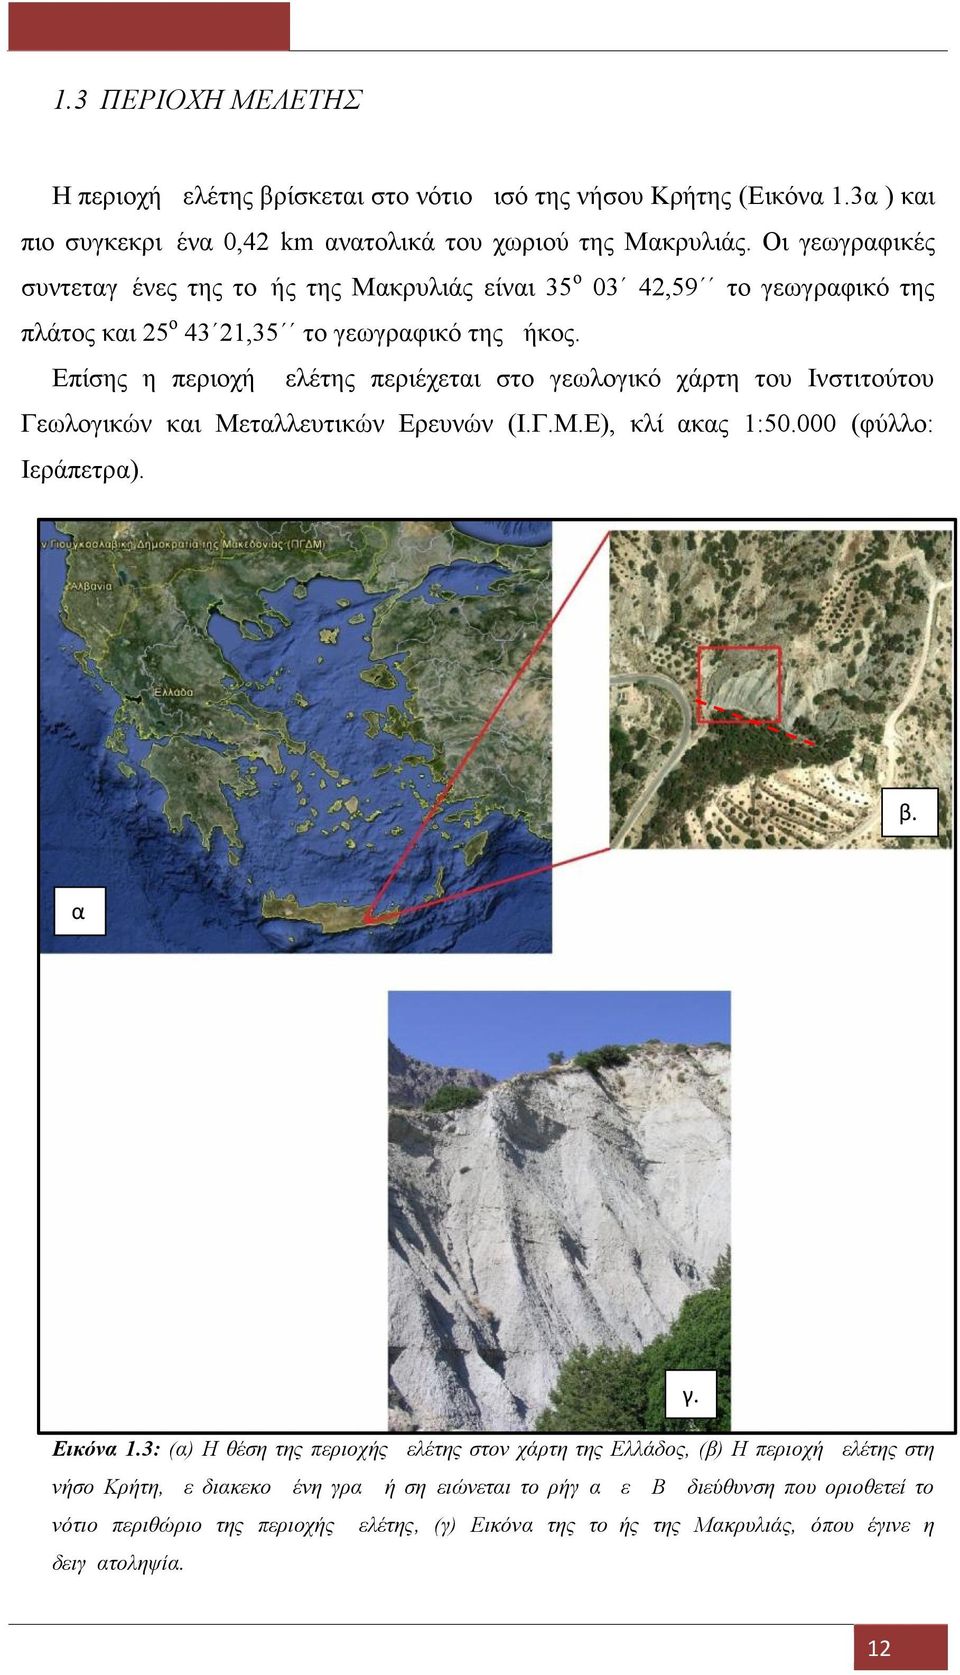 Επίσης η περιοχή μελέτης περιέχεται στο γεωλογικό χάρτη του Ινστιτούτου Γεωλογικών και Μεταλλευτικών Ερευνών (Ι.Γ.Μ.Ε), κλίμακας 1:50.000 (φύλλο: Ιεράπετρα). β. α. γ. Εικόνα 1.